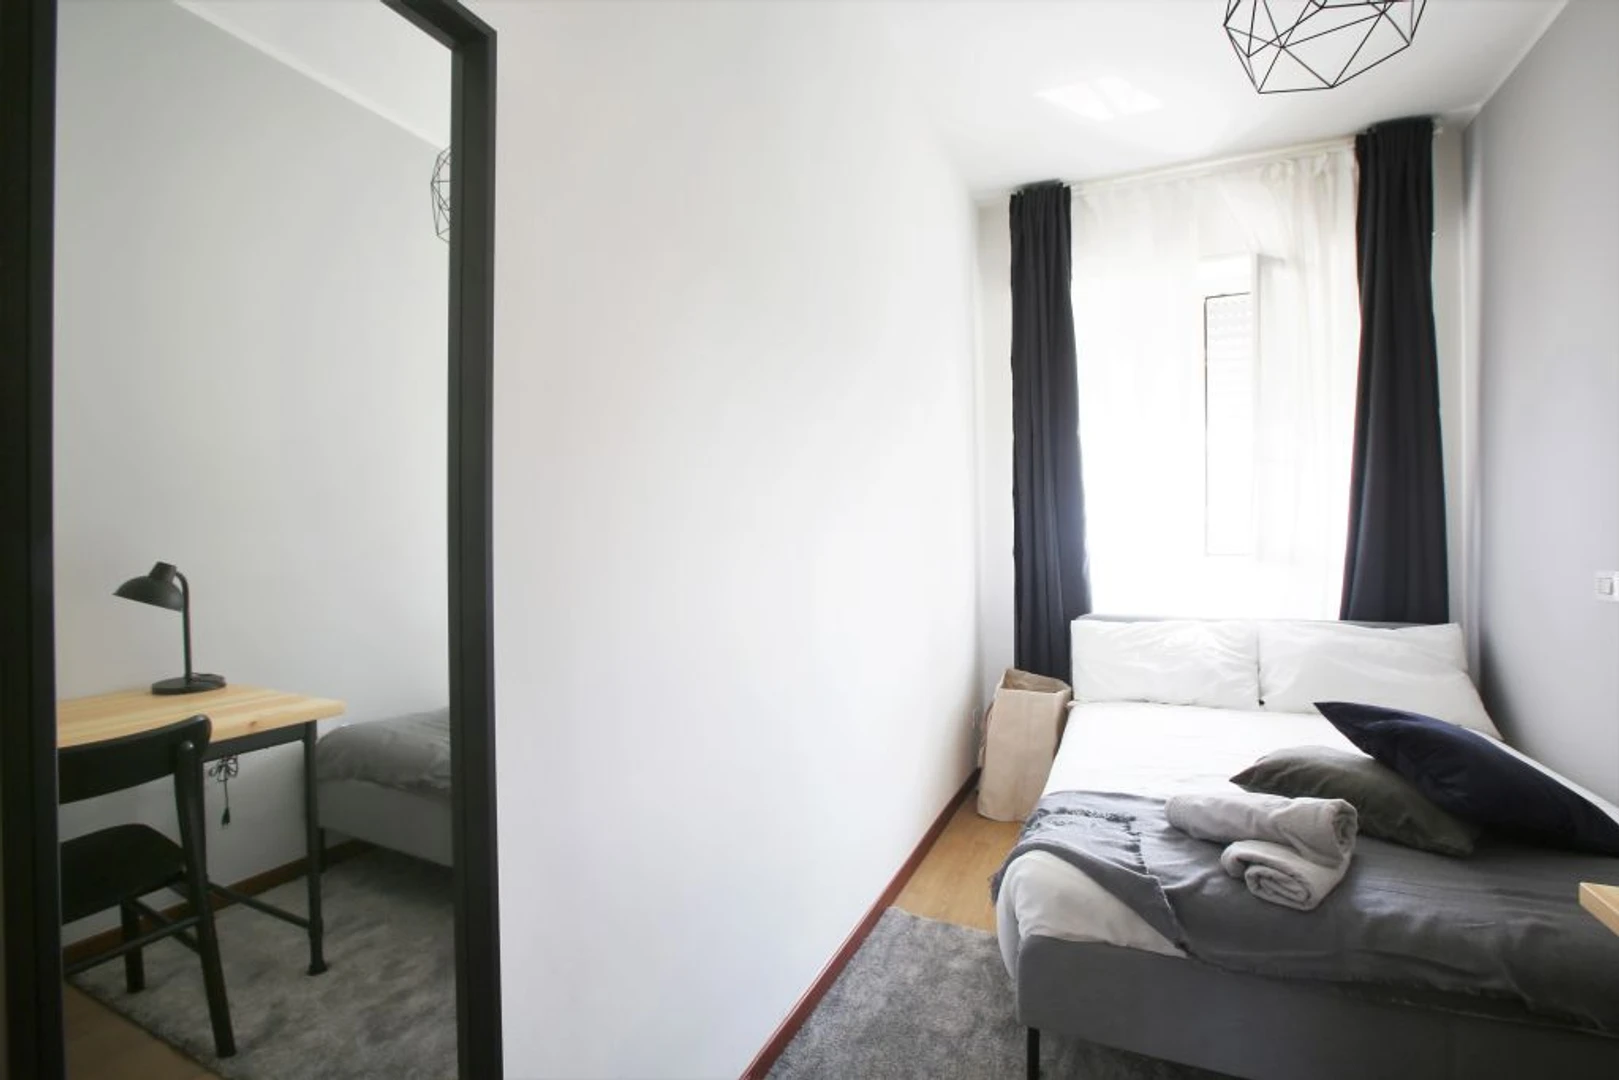 Alquiler de habitación en piso compartido en Milán